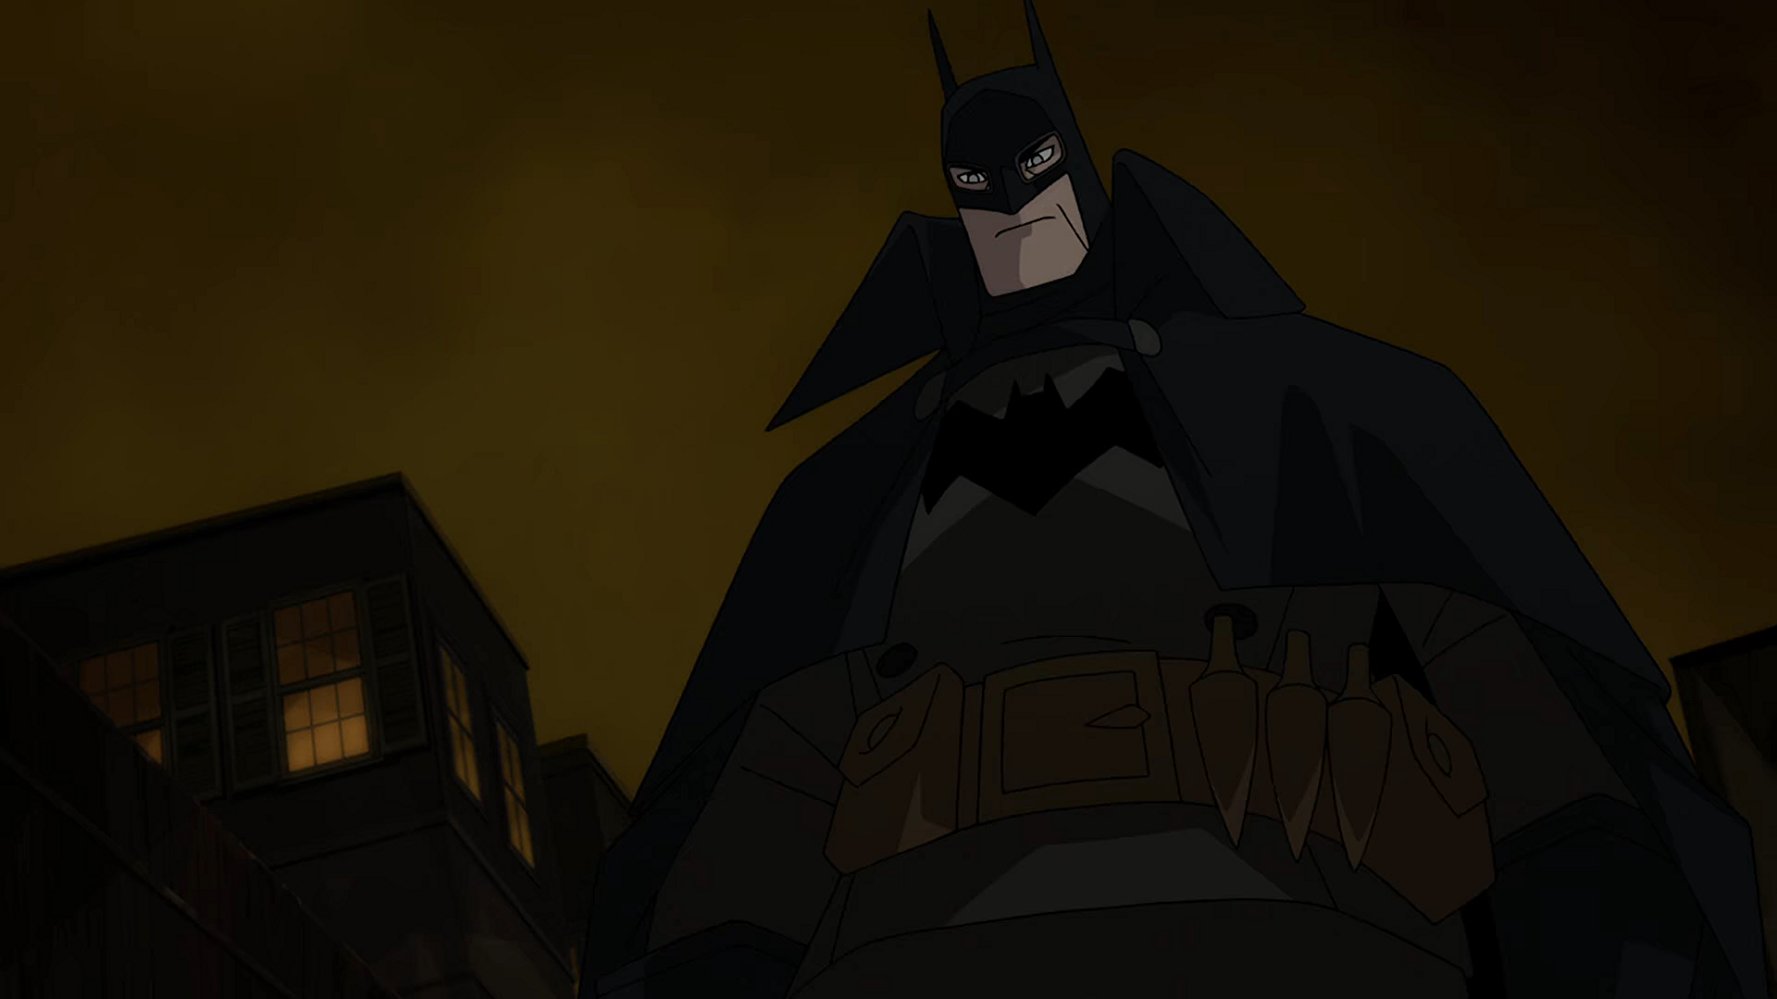 Watch Batman: Gotham by Gaslight